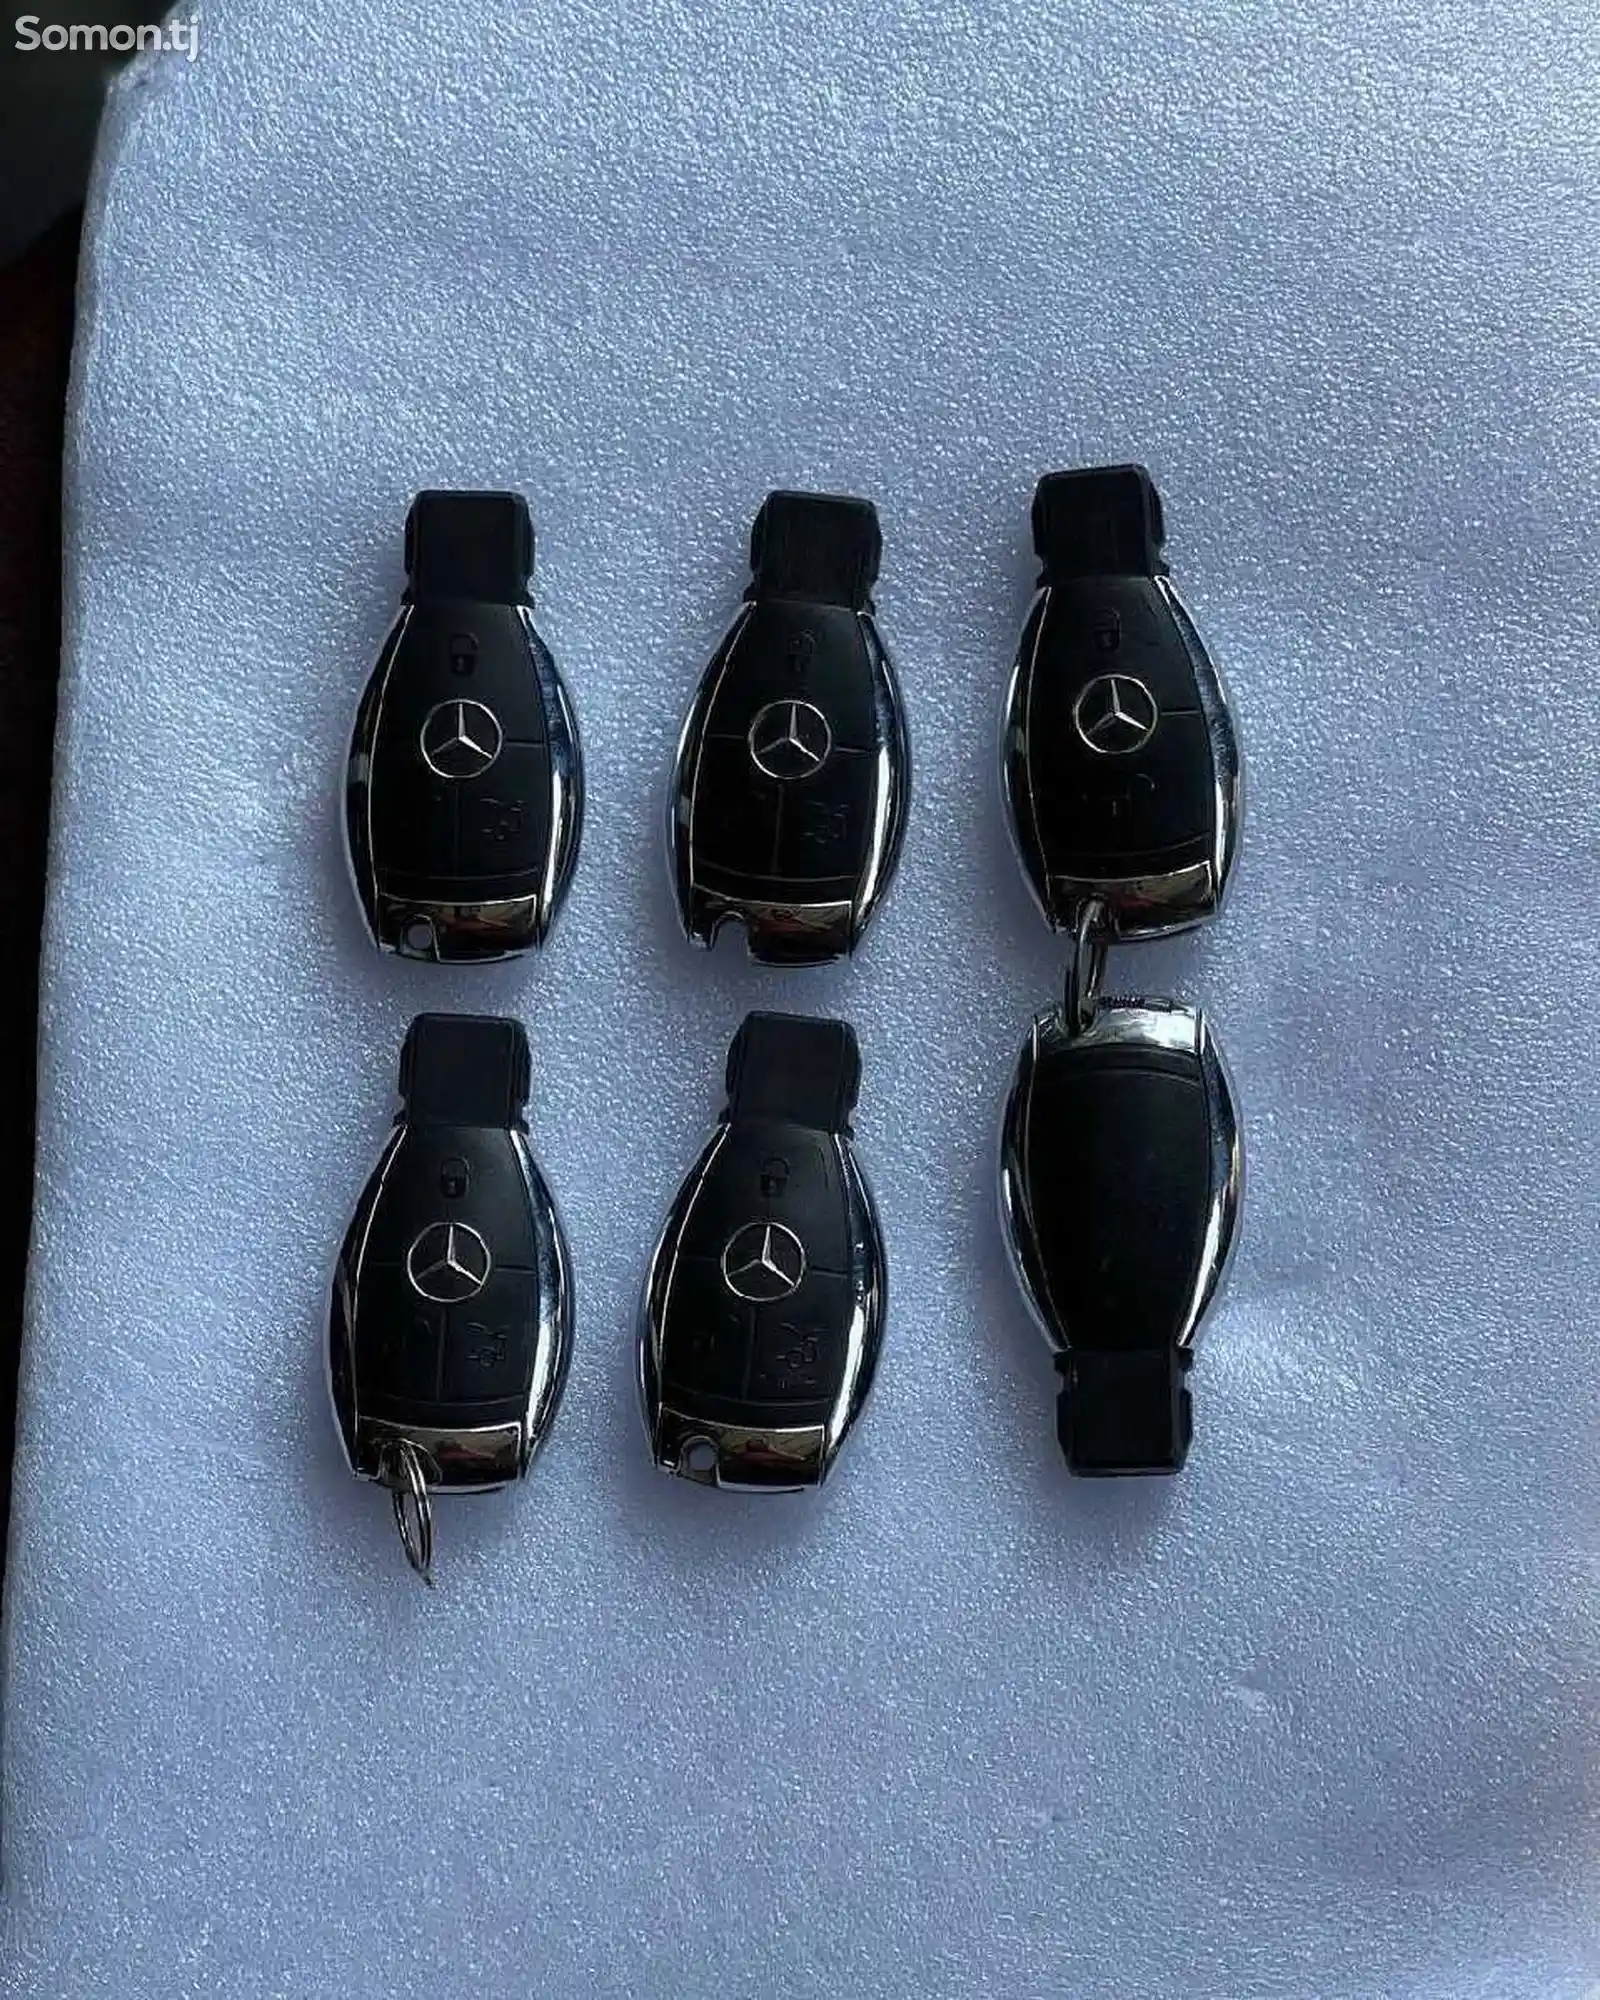 Ключи от Mercedes Benz-3